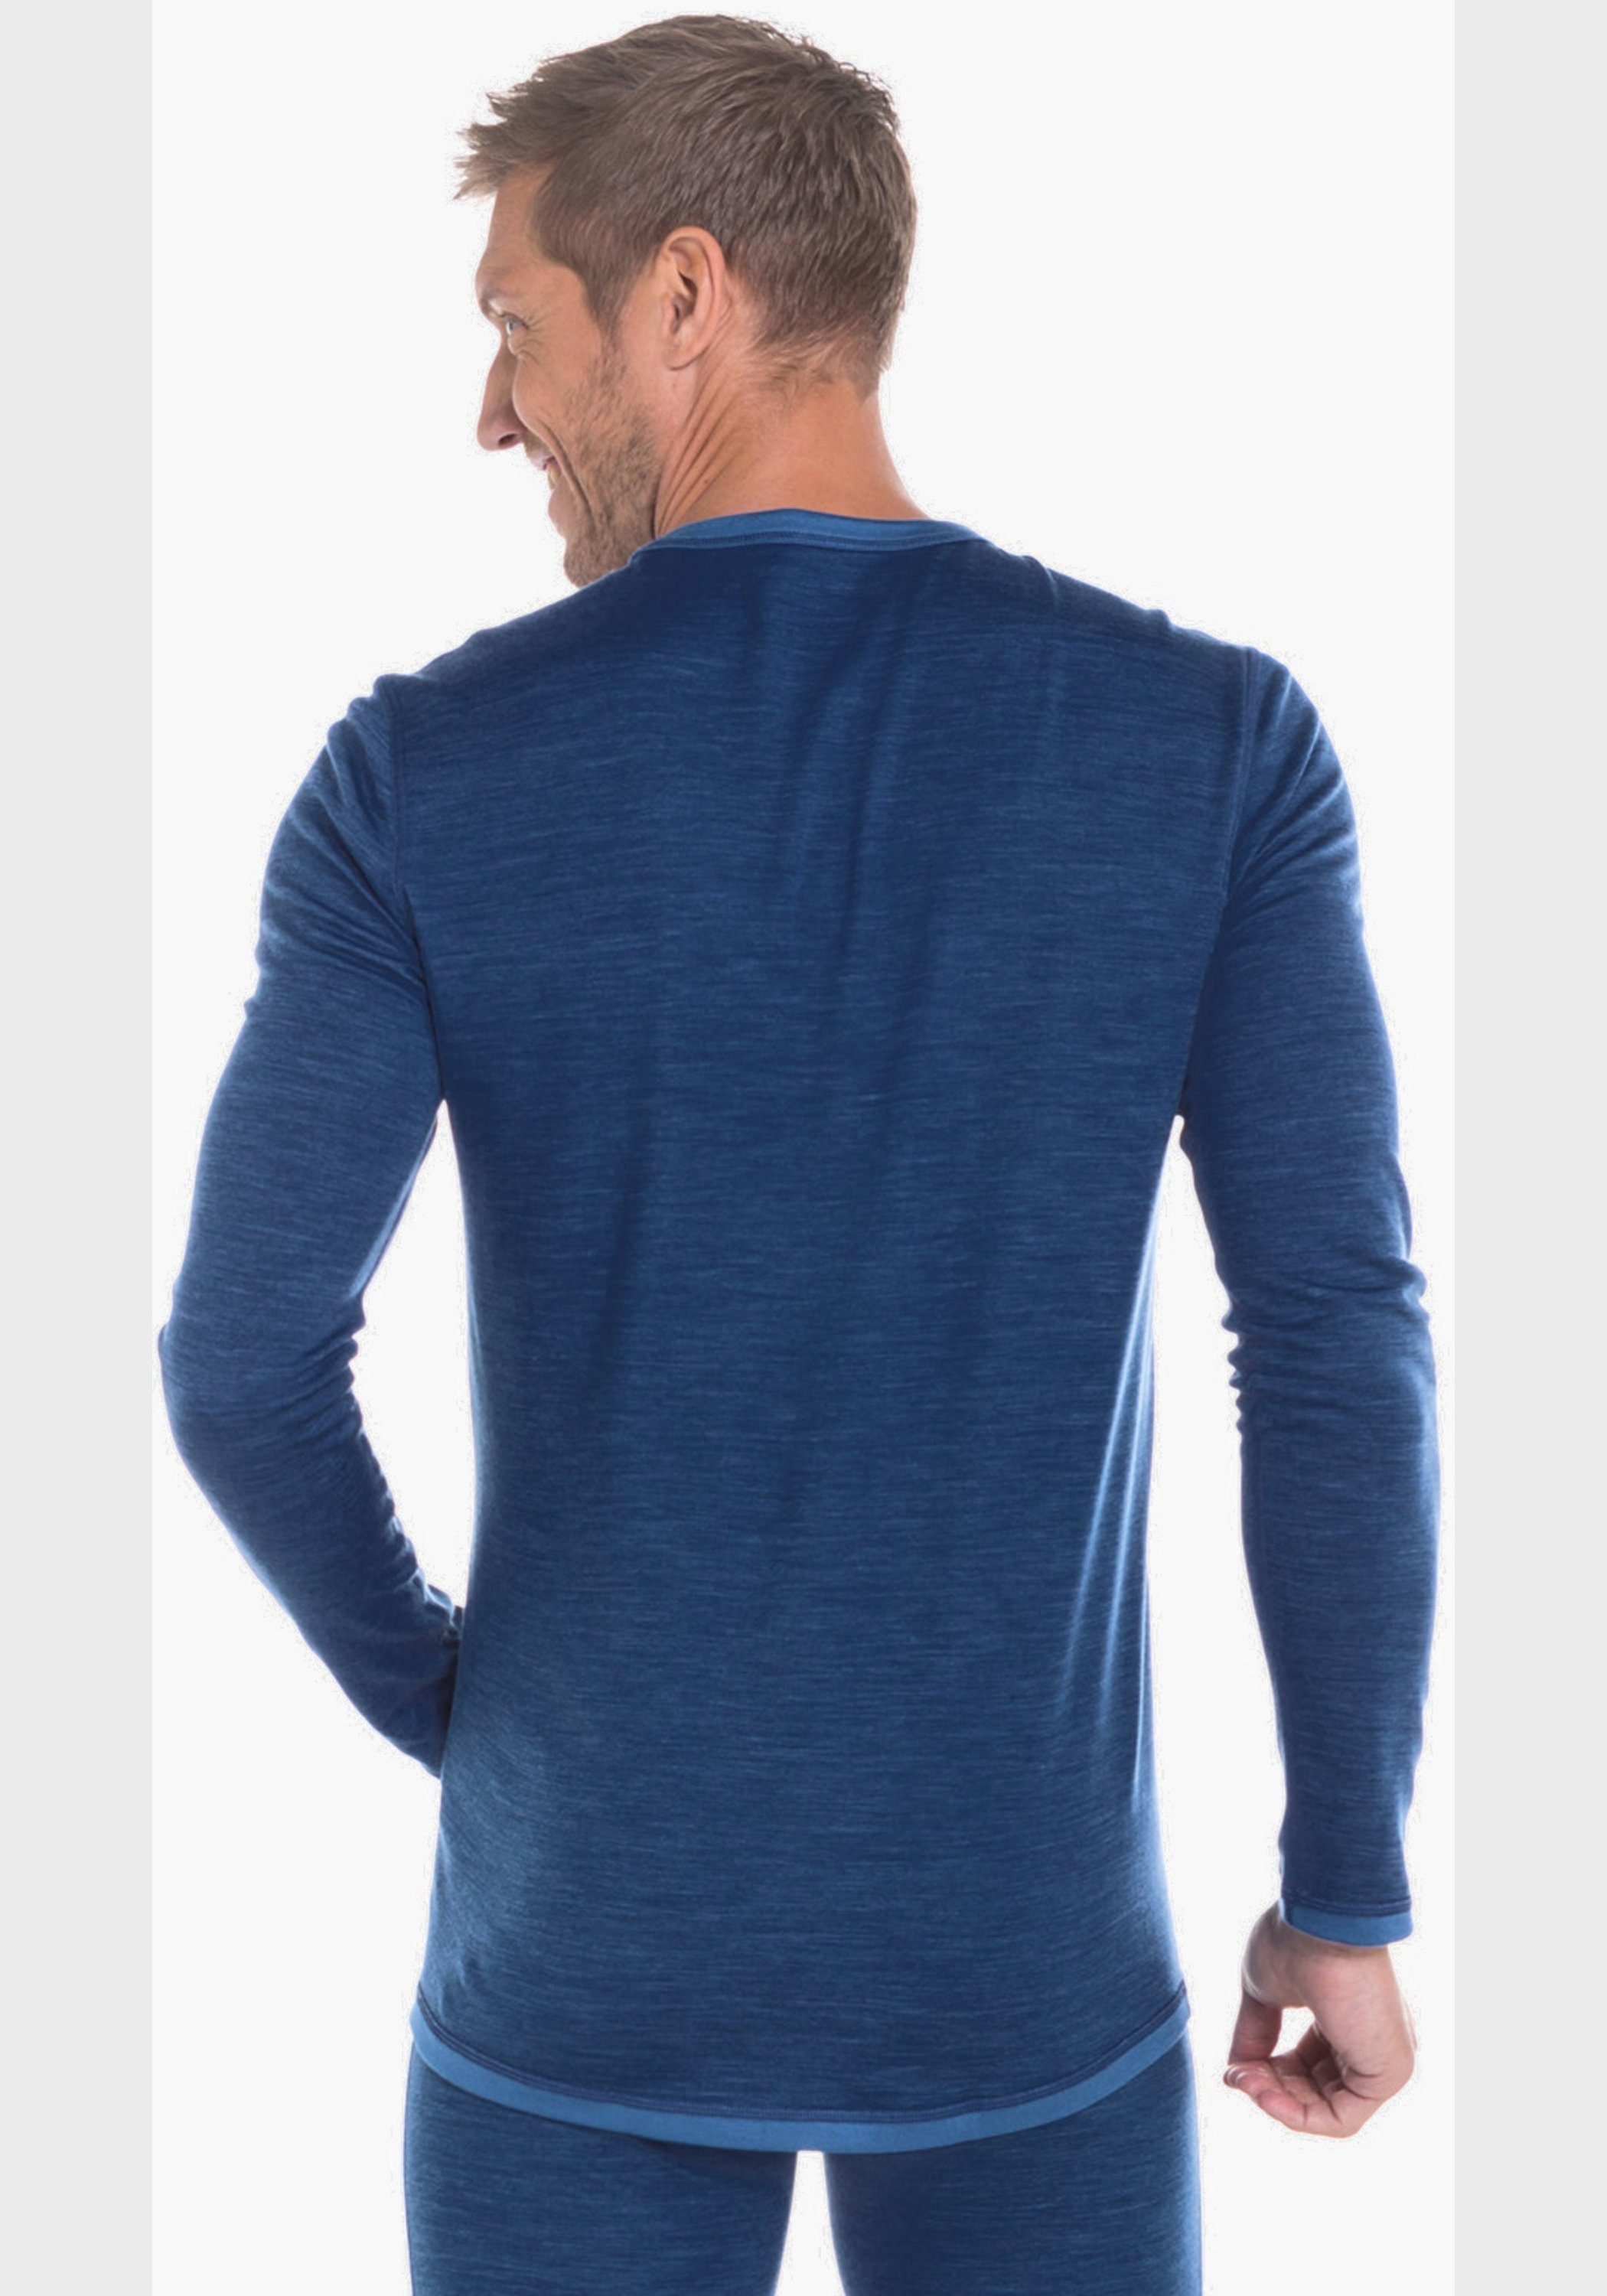 Blau Merino M Sport Arm Shirt Funktionsshirt Schöffel 1/1